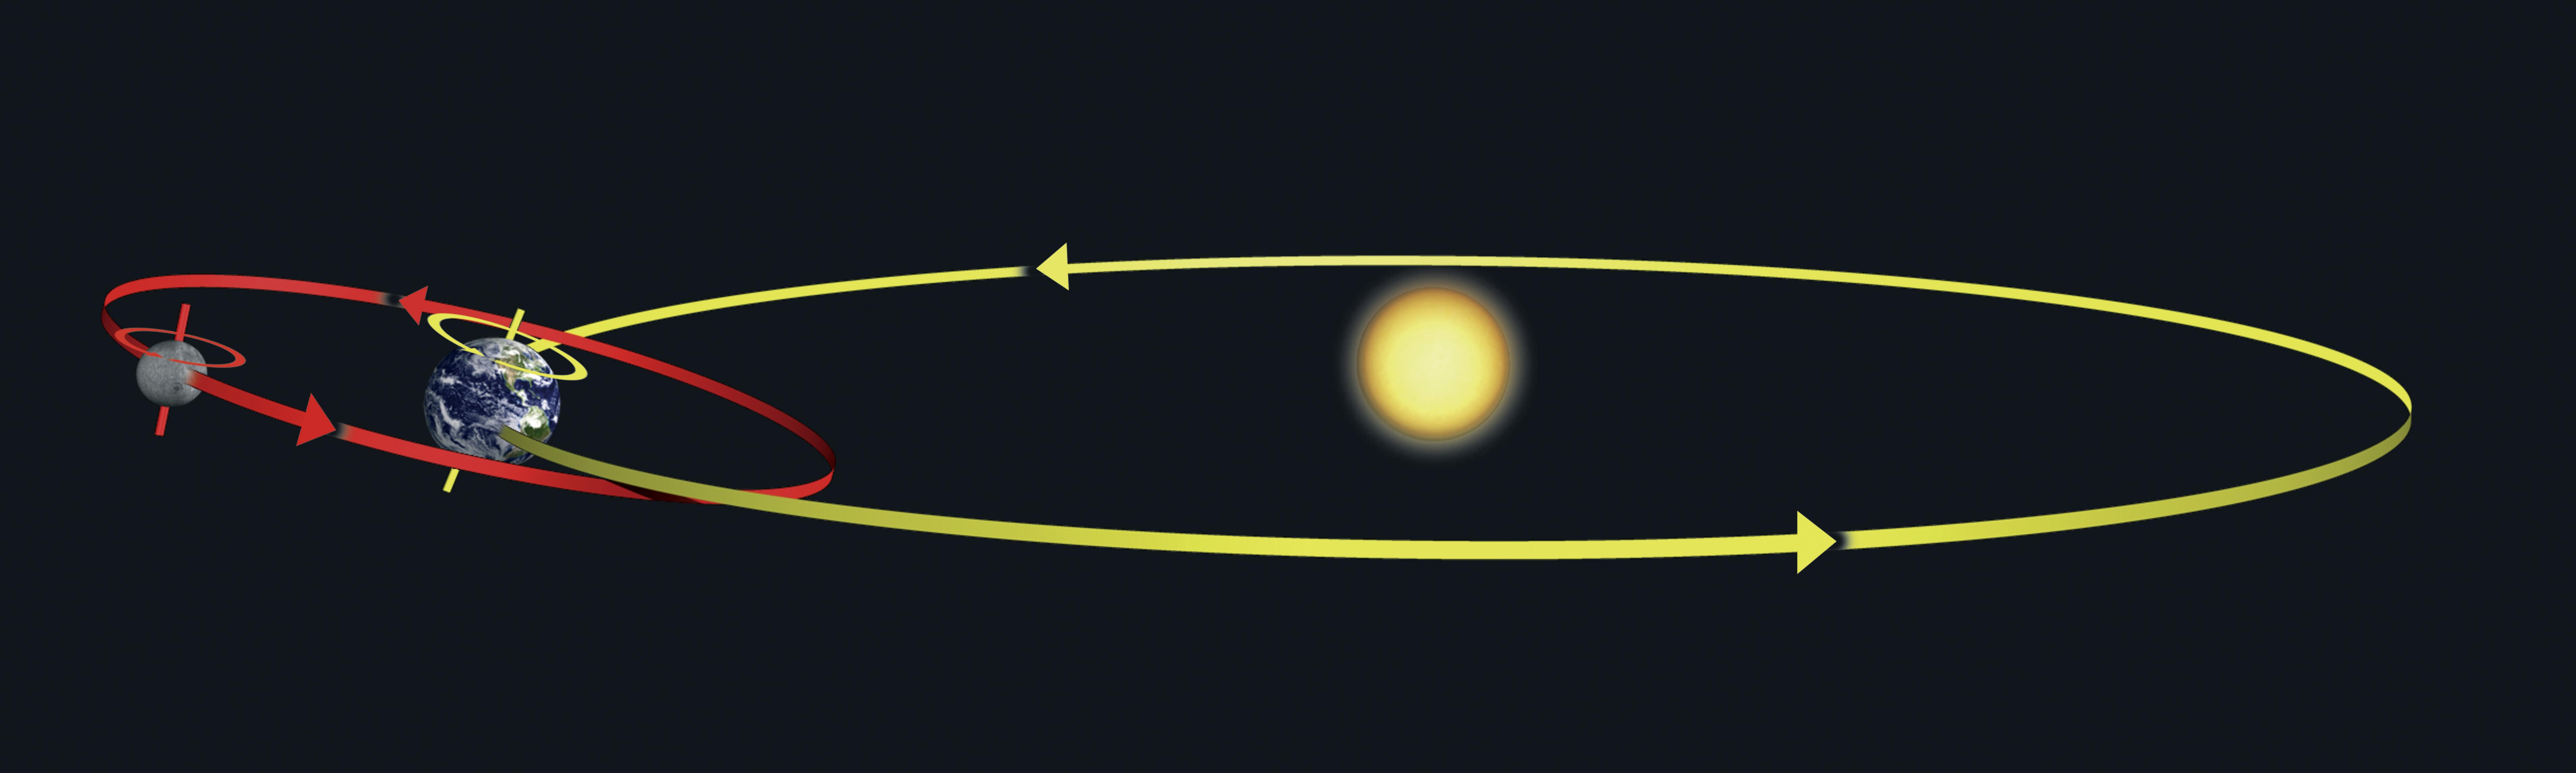 Ilustração da Terra girando em seu eixo e em sua órbita ao redor do Sol